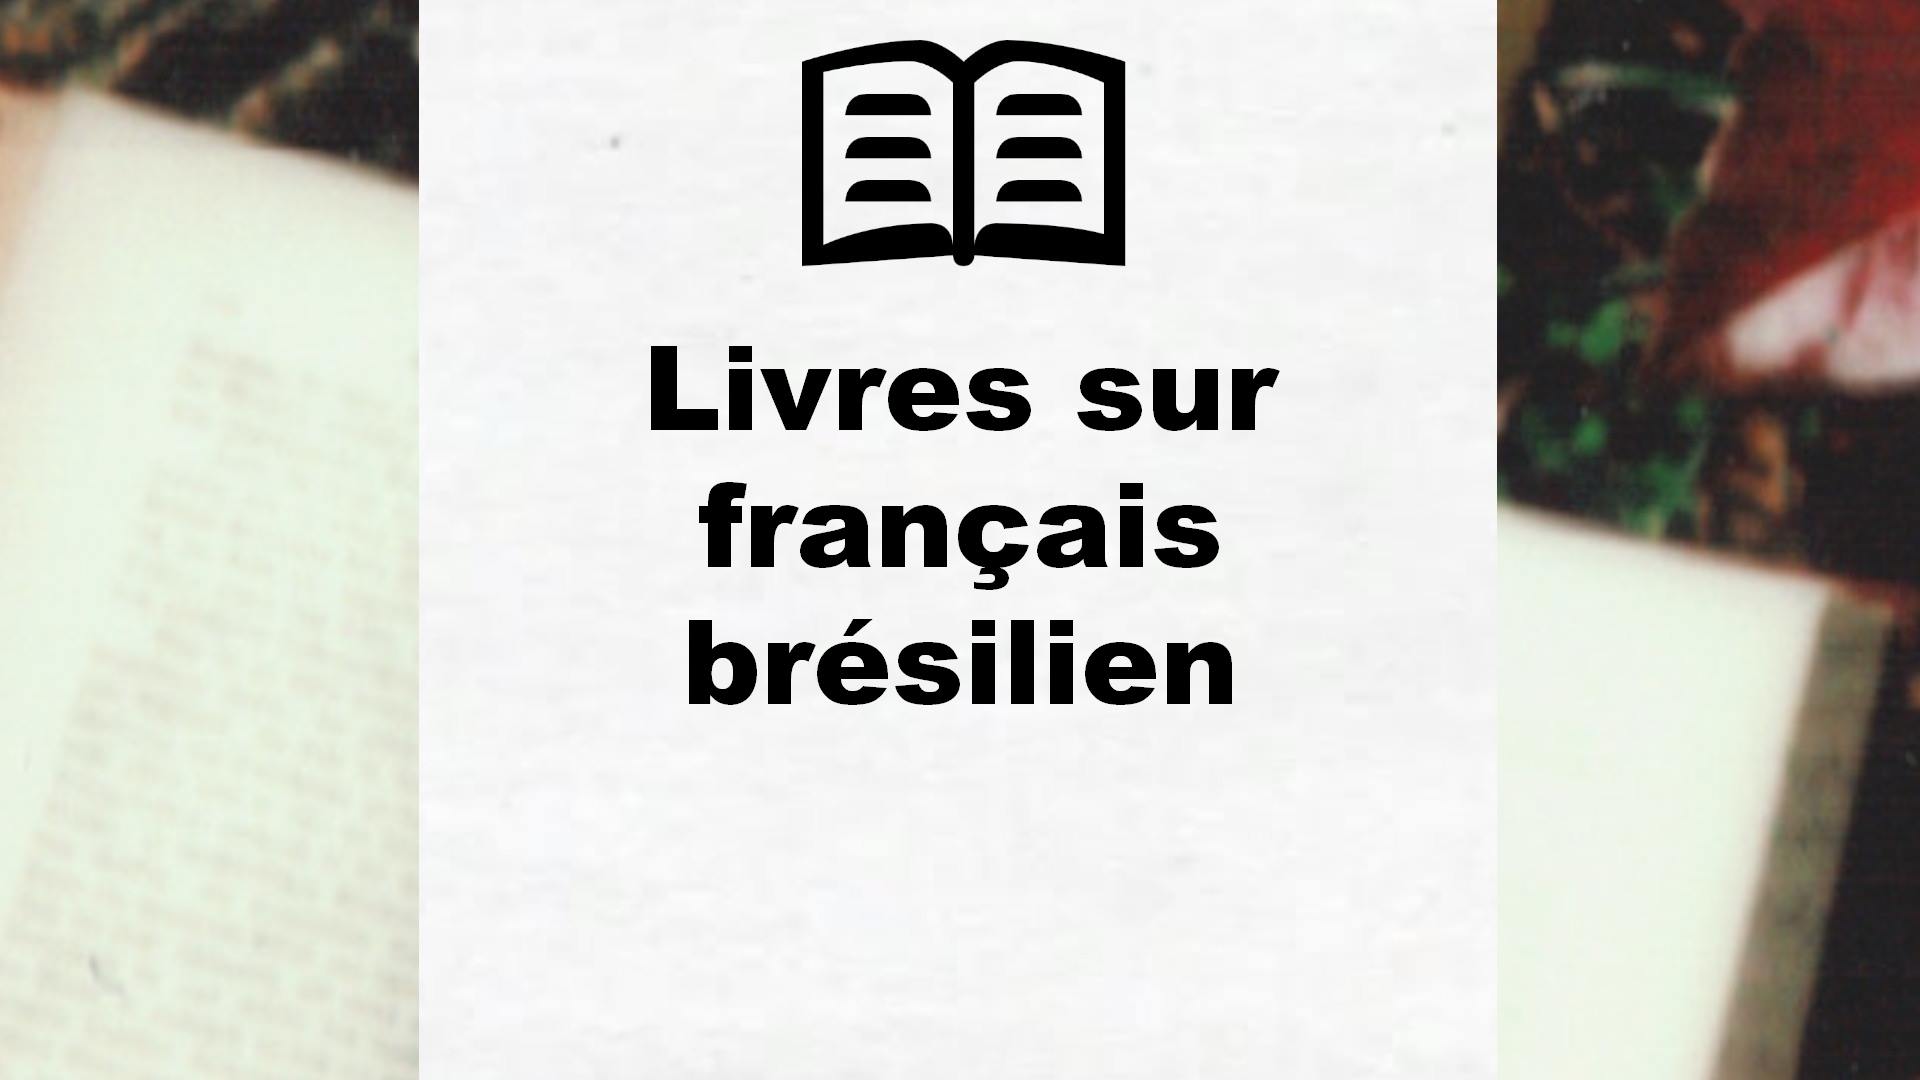 Livres sur français brésilien